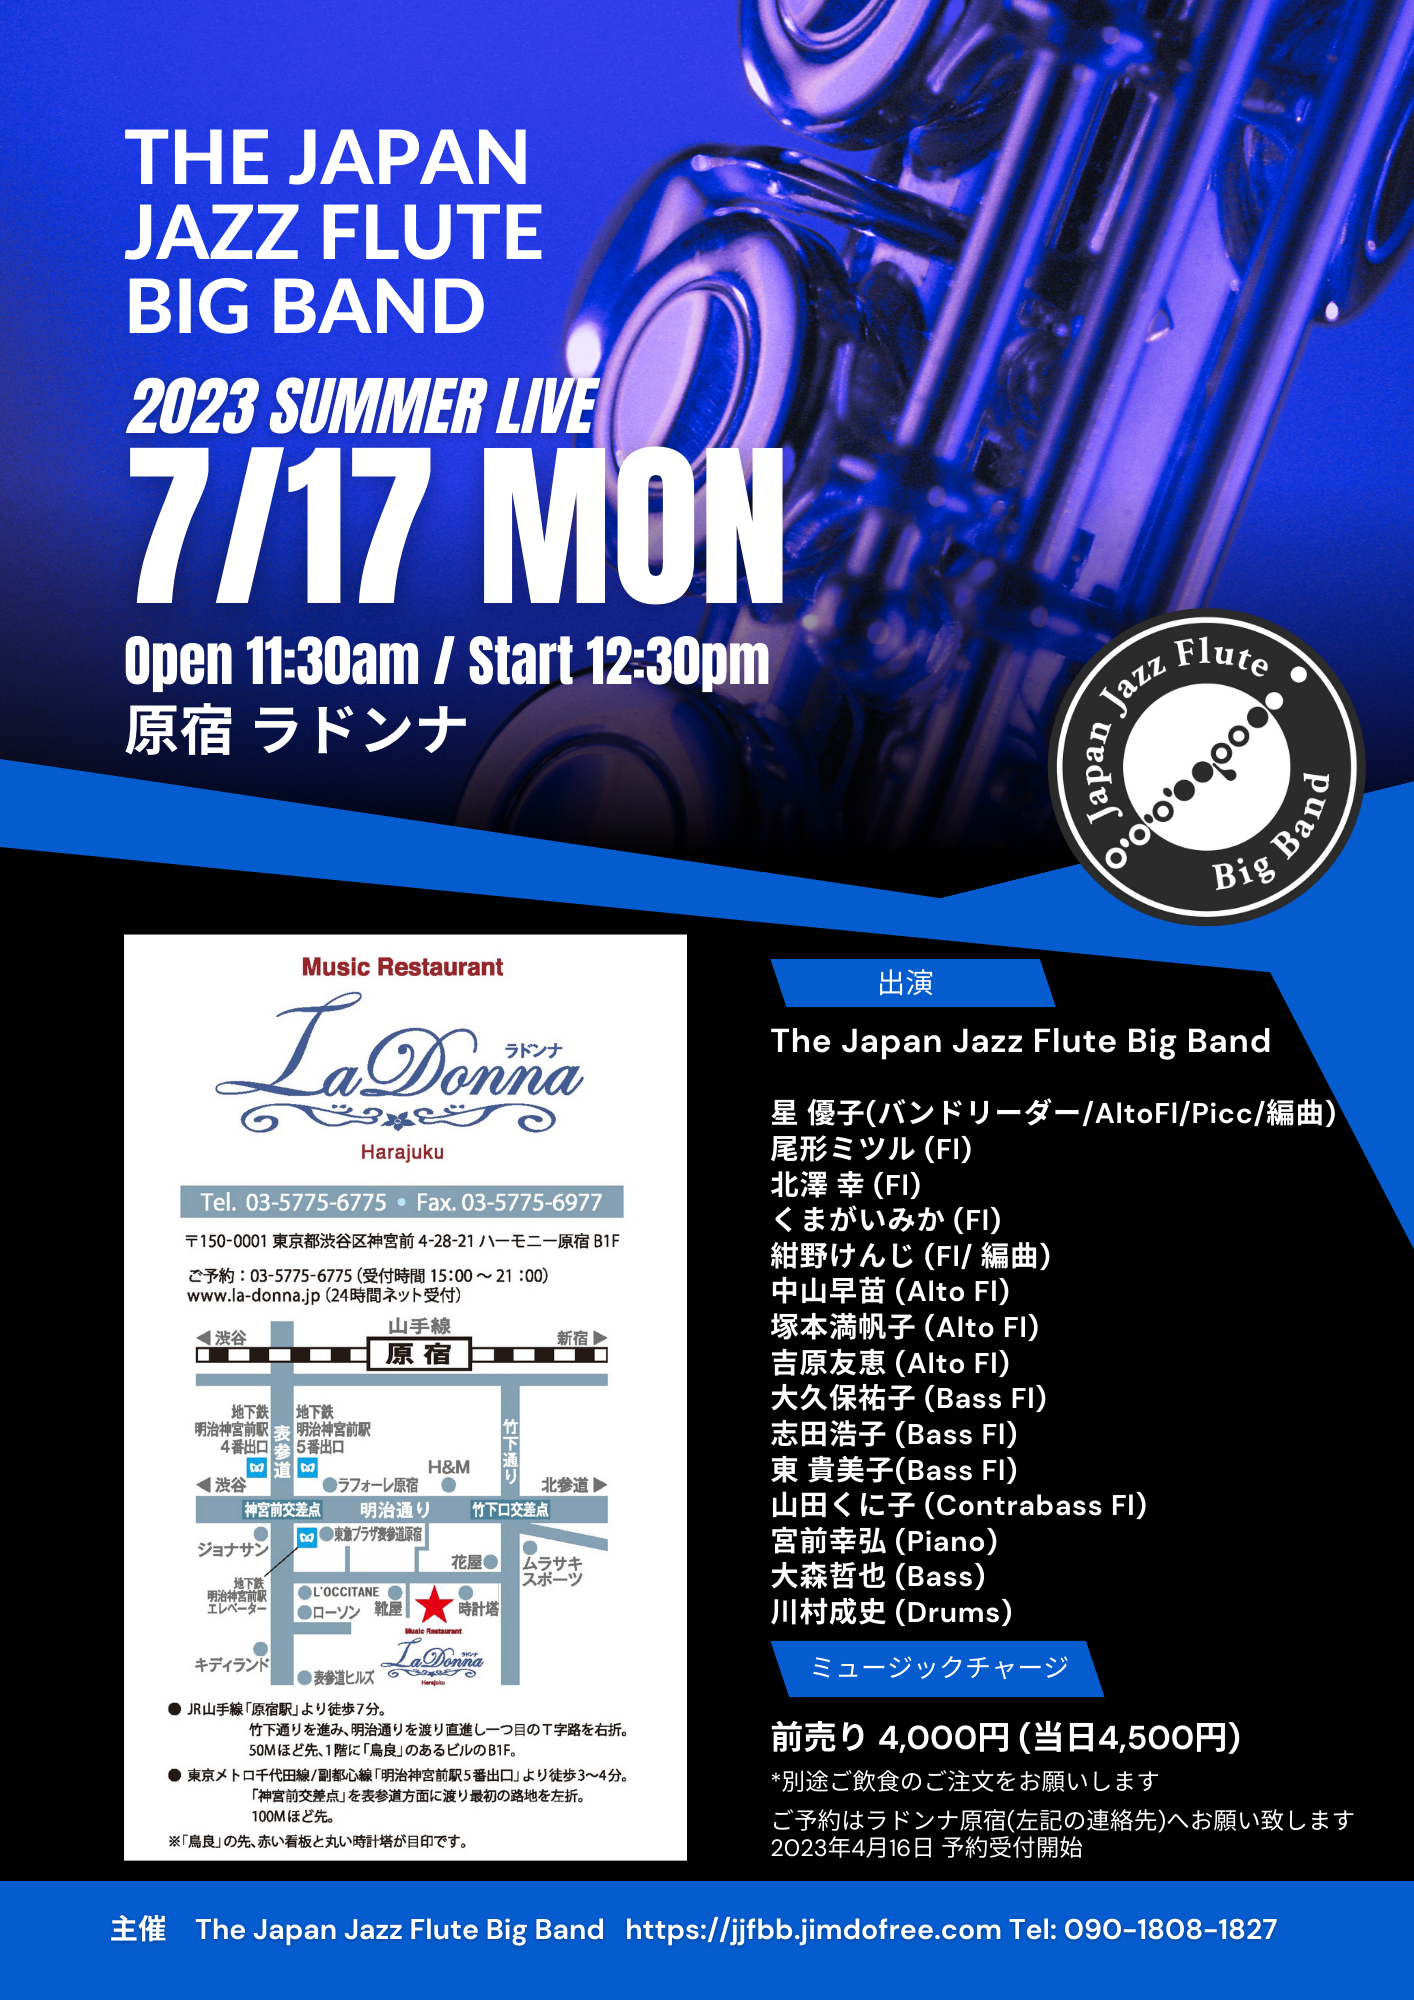 The Japan Jazz Flute Big Band 2023 Summer Live